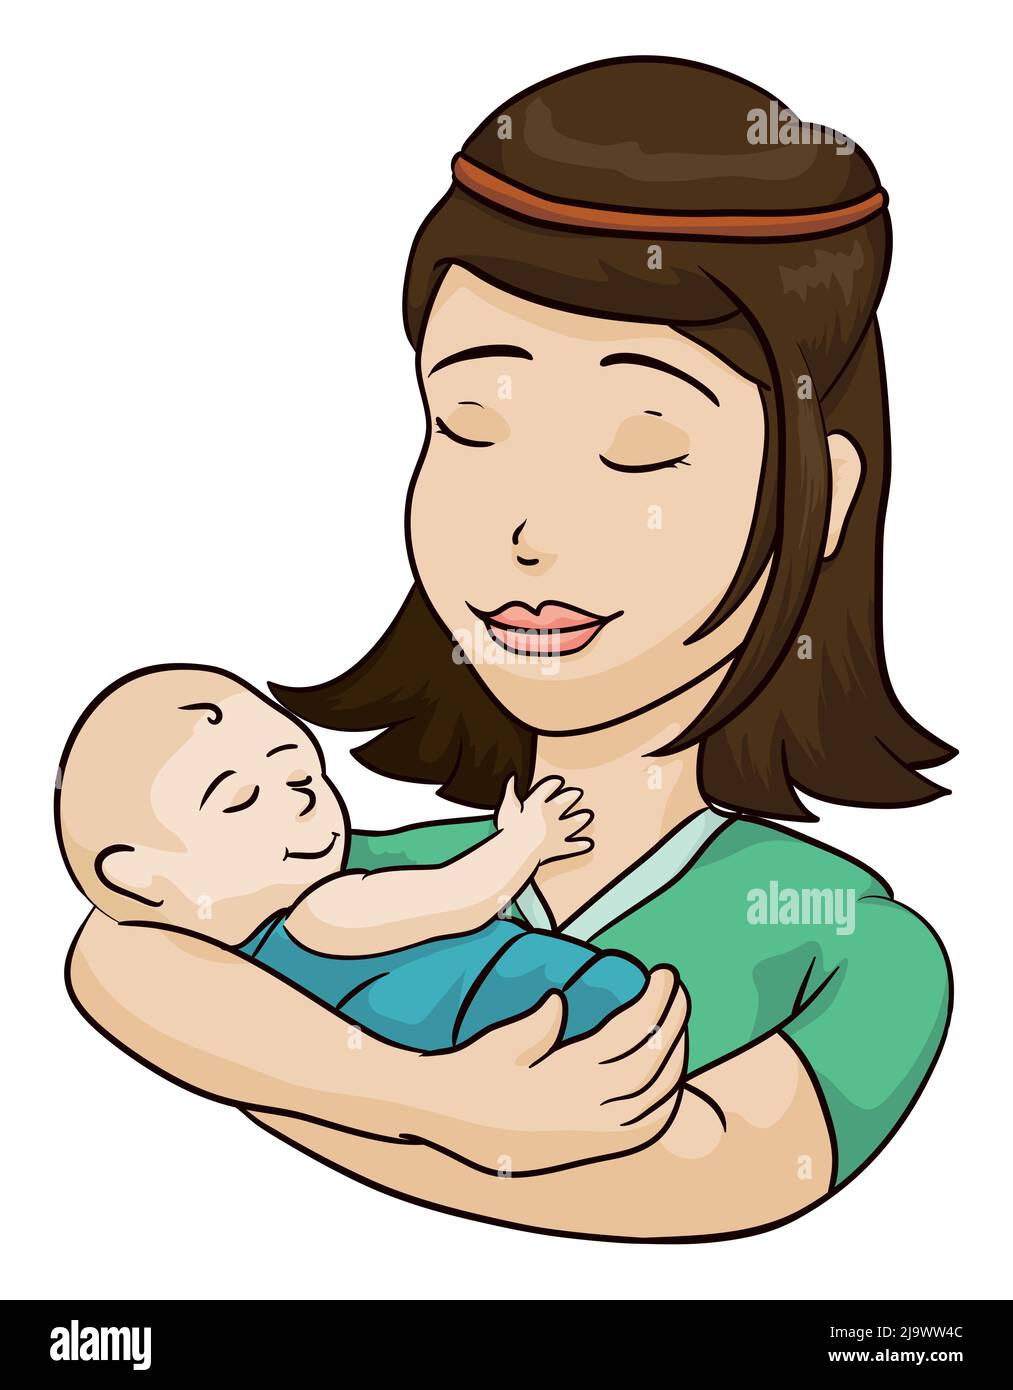 Mère mignonne et affective tenant son bébé dans les bras, les deux avec un geste serein. Illustration de style dessin animé, isolée sur fond blanc. Illustration de Vecteur